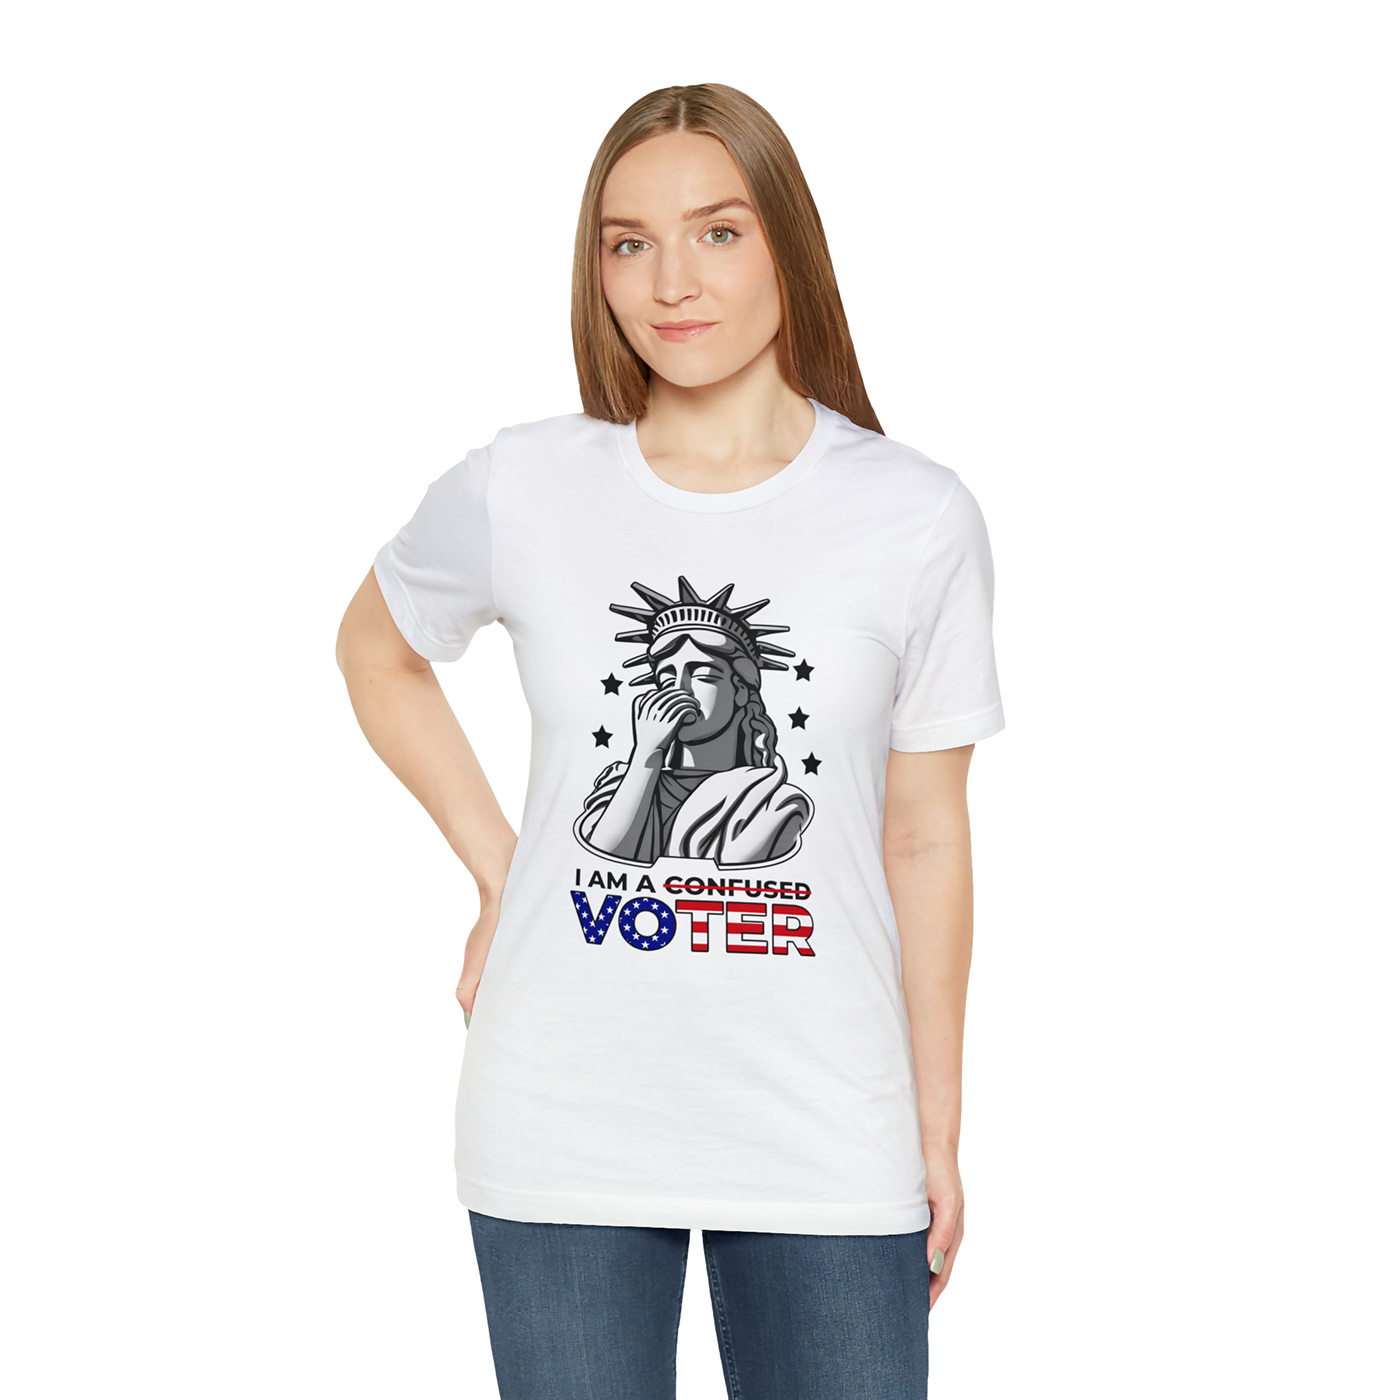 us election t-shirt,
election t shirts,
election t-shirt design,
election shirts,
custom election sh